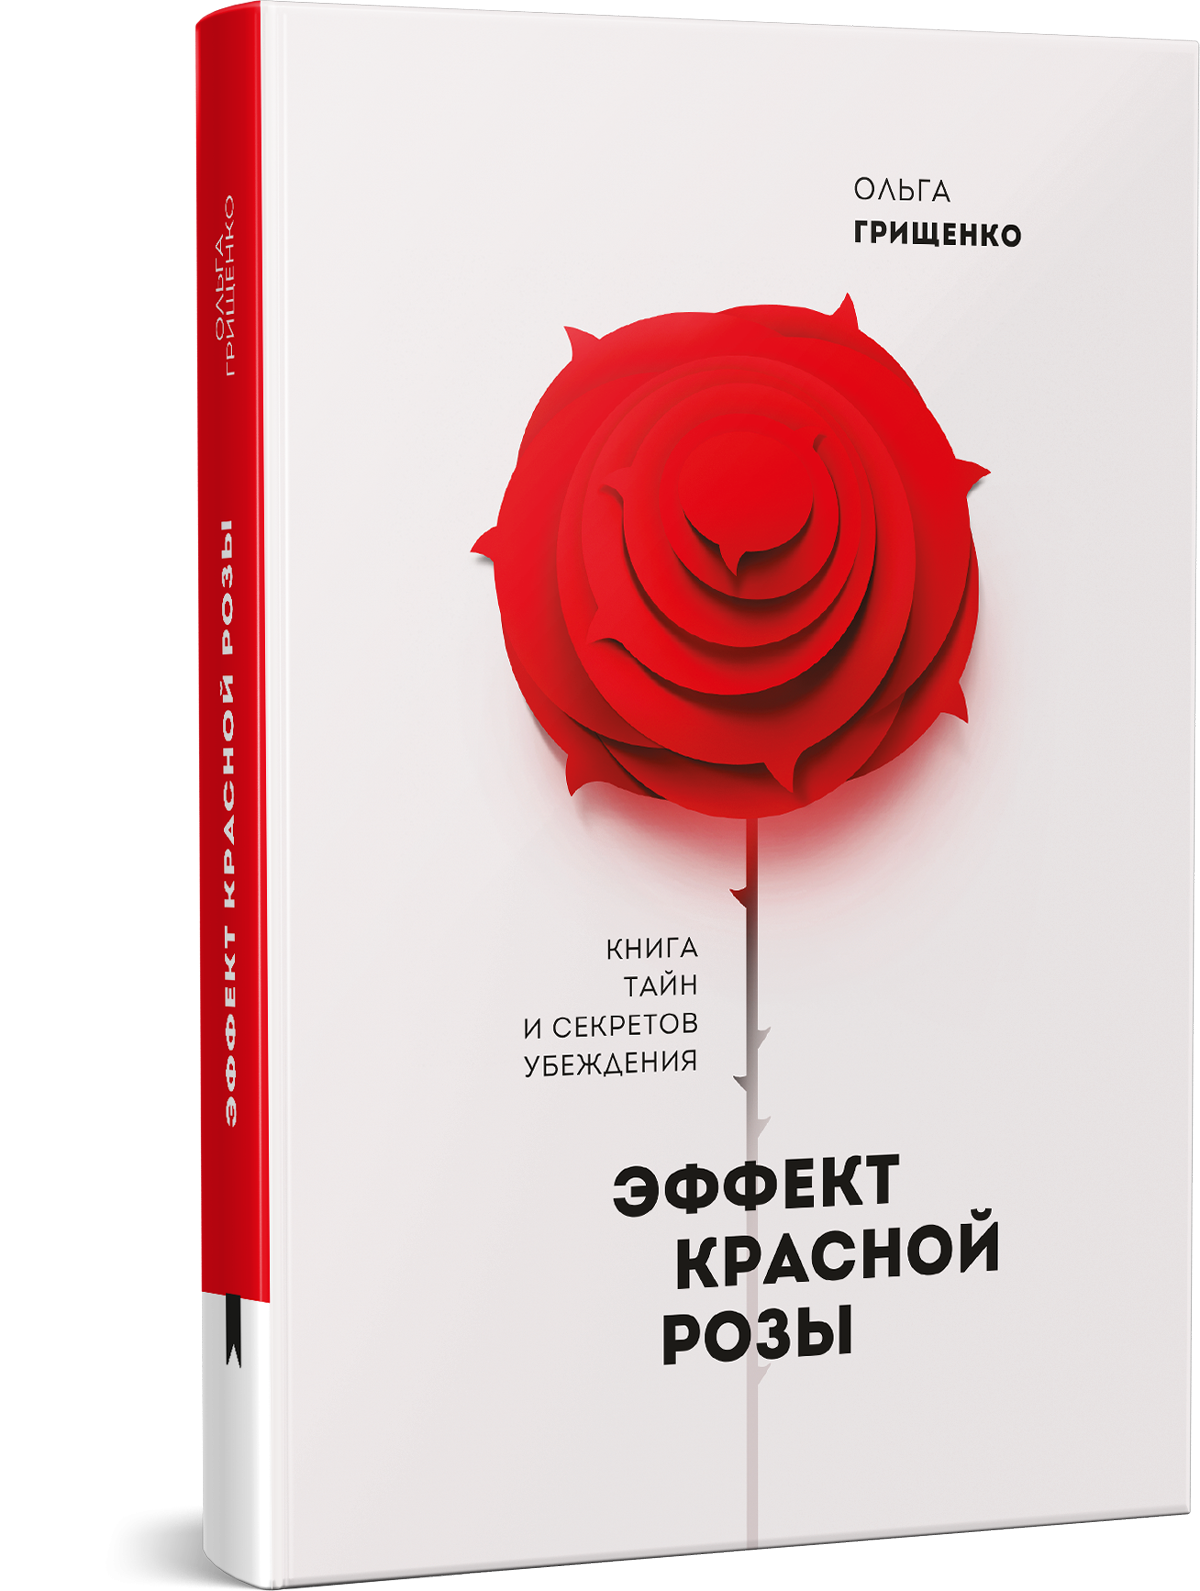 Книга про розы. Эффект красной розы книга. Книга с розой на обложке.